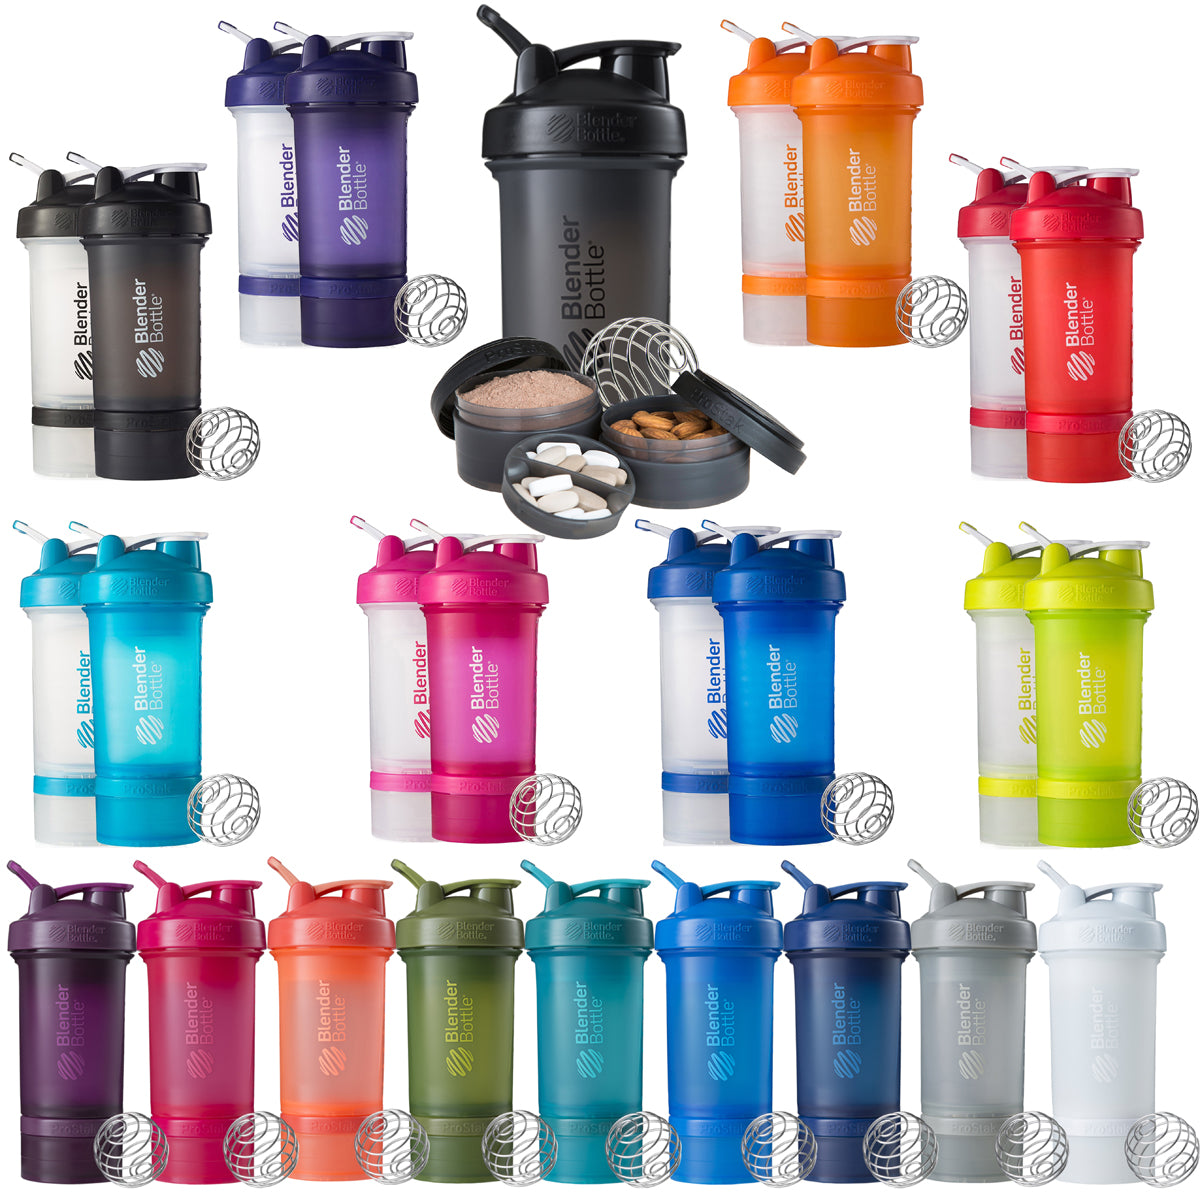 Blender Bottle ProStak System with 22 oz. Shaker Cup and Twist N' Lock Storage Blender Bottle